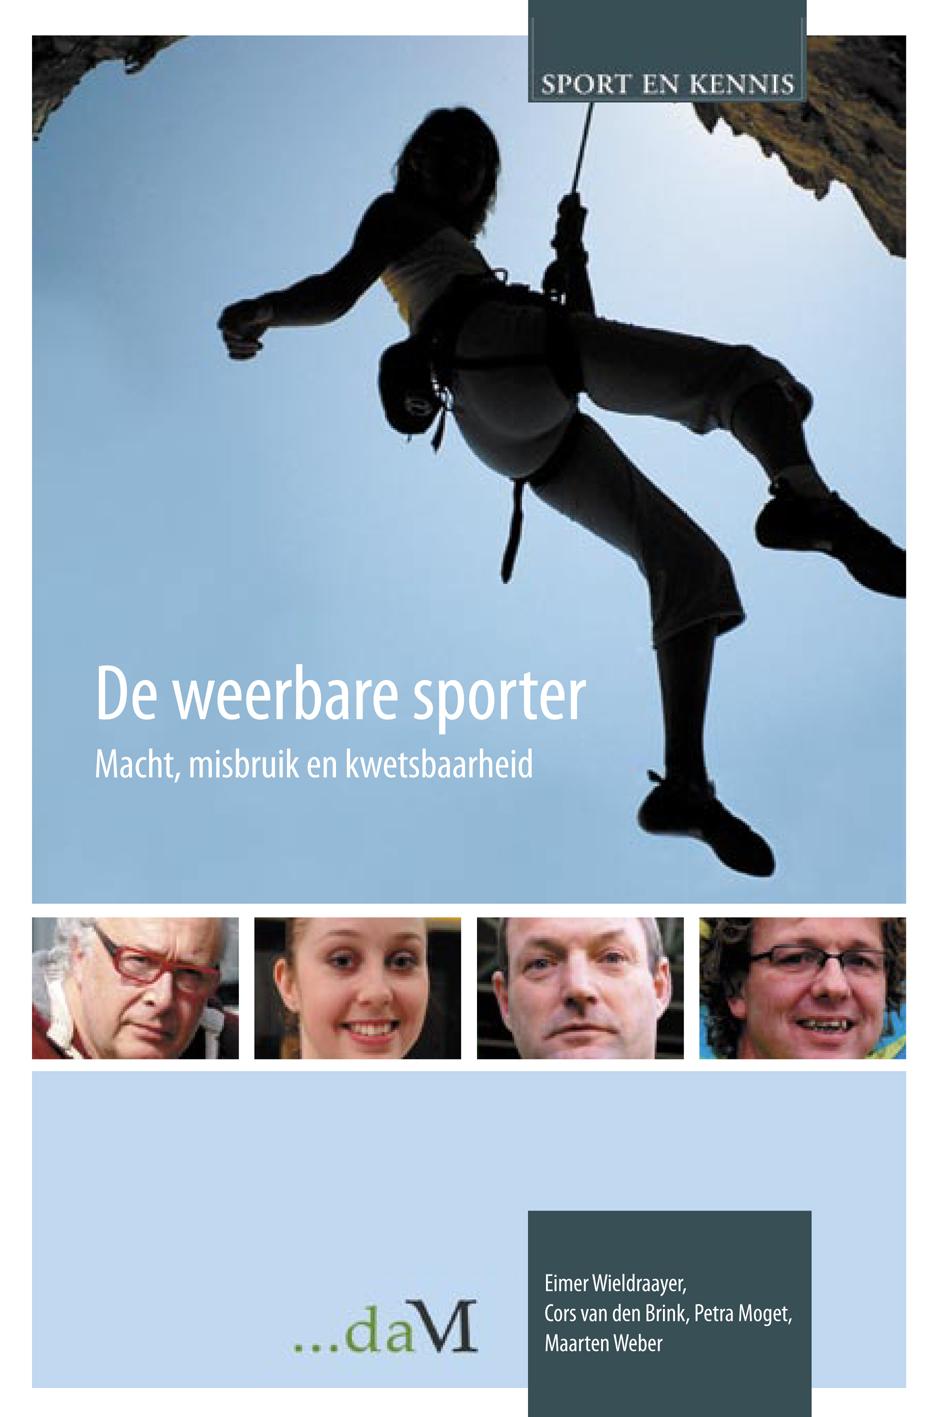 Sport en Kennis Deze preview is een gedeelte uit het boek: De weerbare sporter Macht, misbruik en